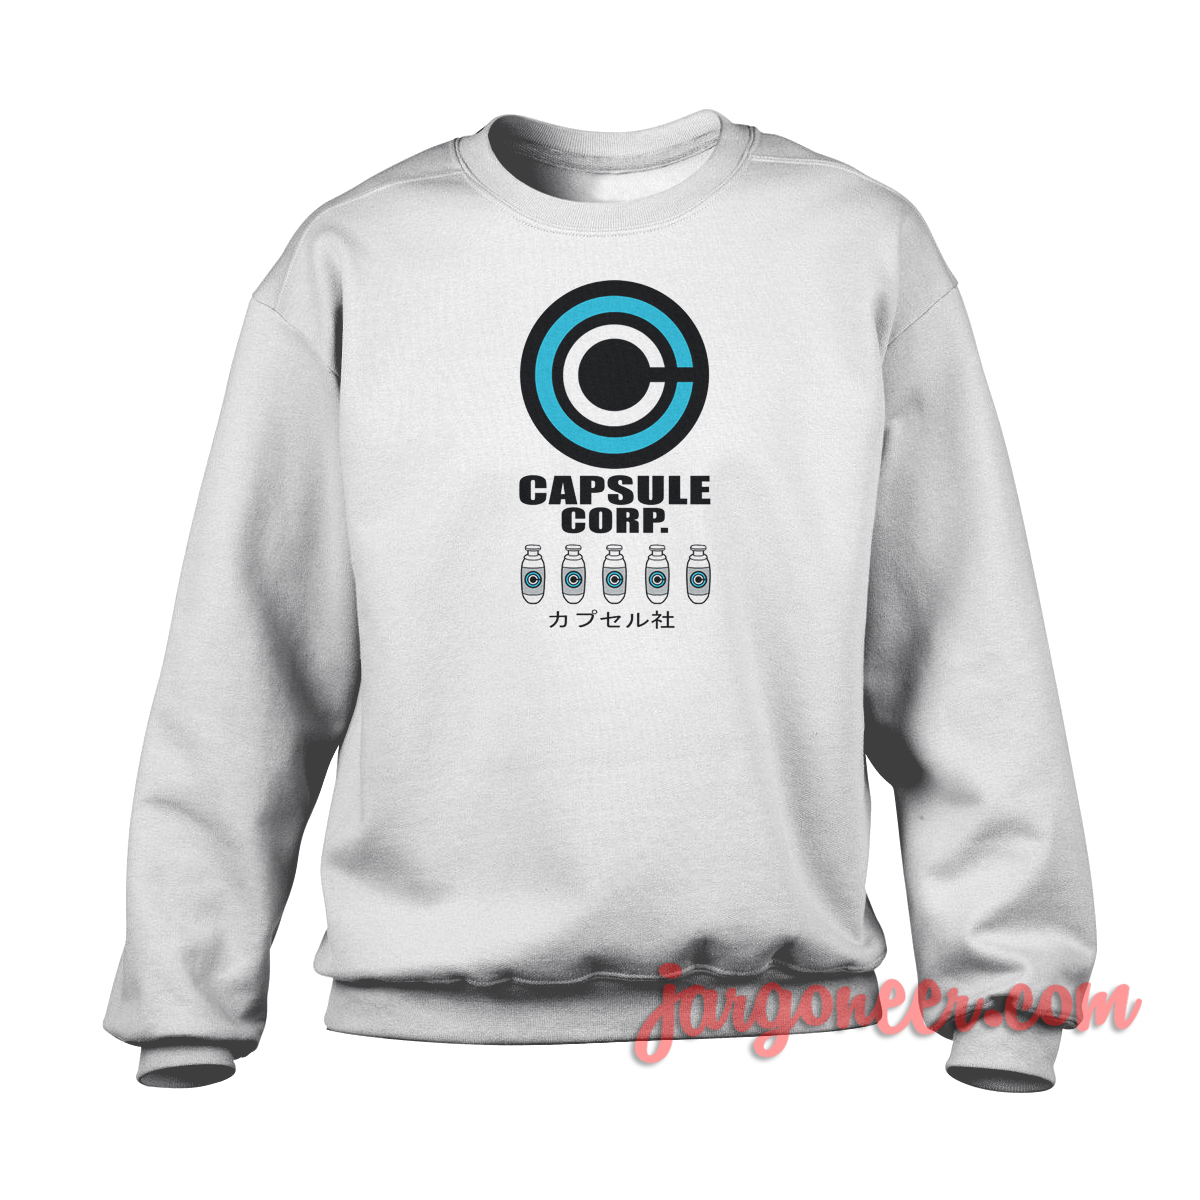 Capsule Corp 1 - Shop Unique Graphic Cool Shirt Designs